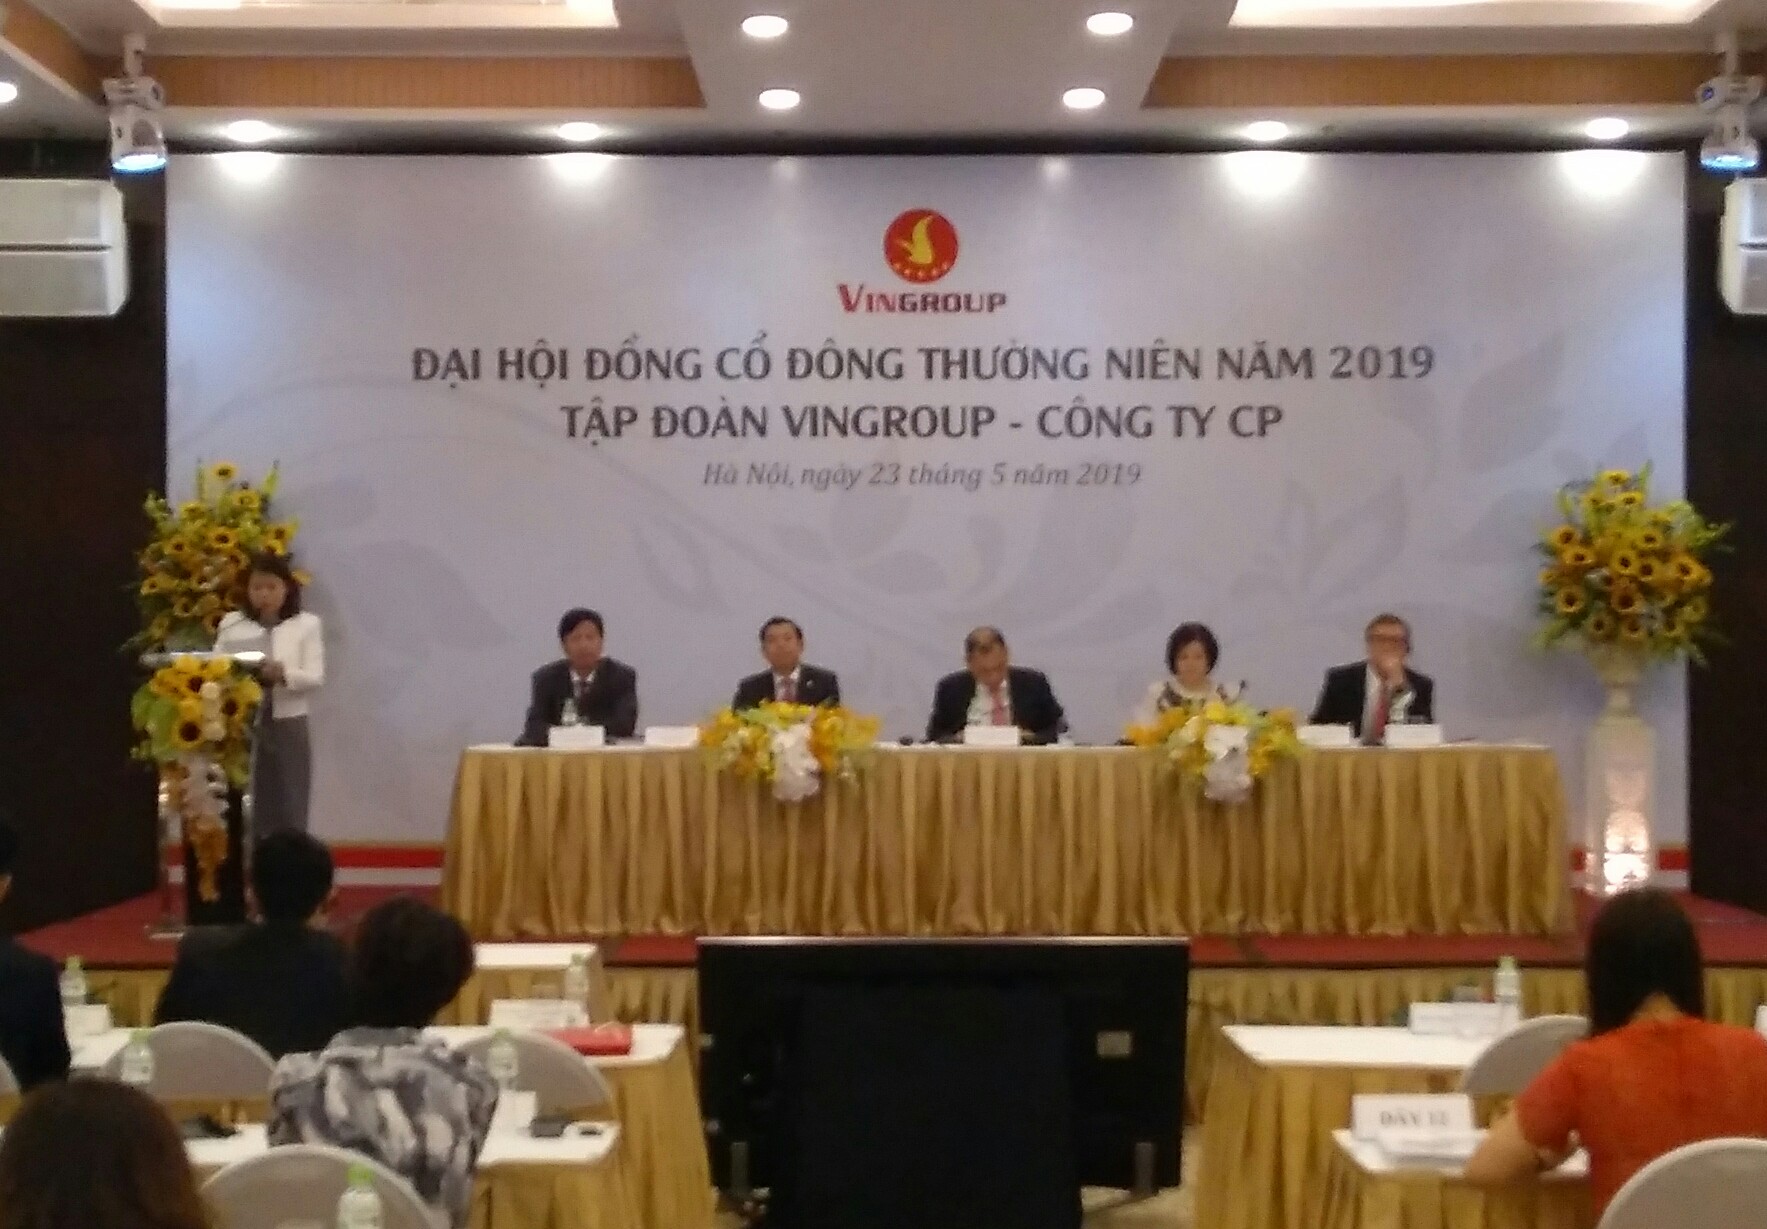 Đại hội diễn ra tại Trung tâm Hội nghị Almaz, quận Long Biên, Hà Nội